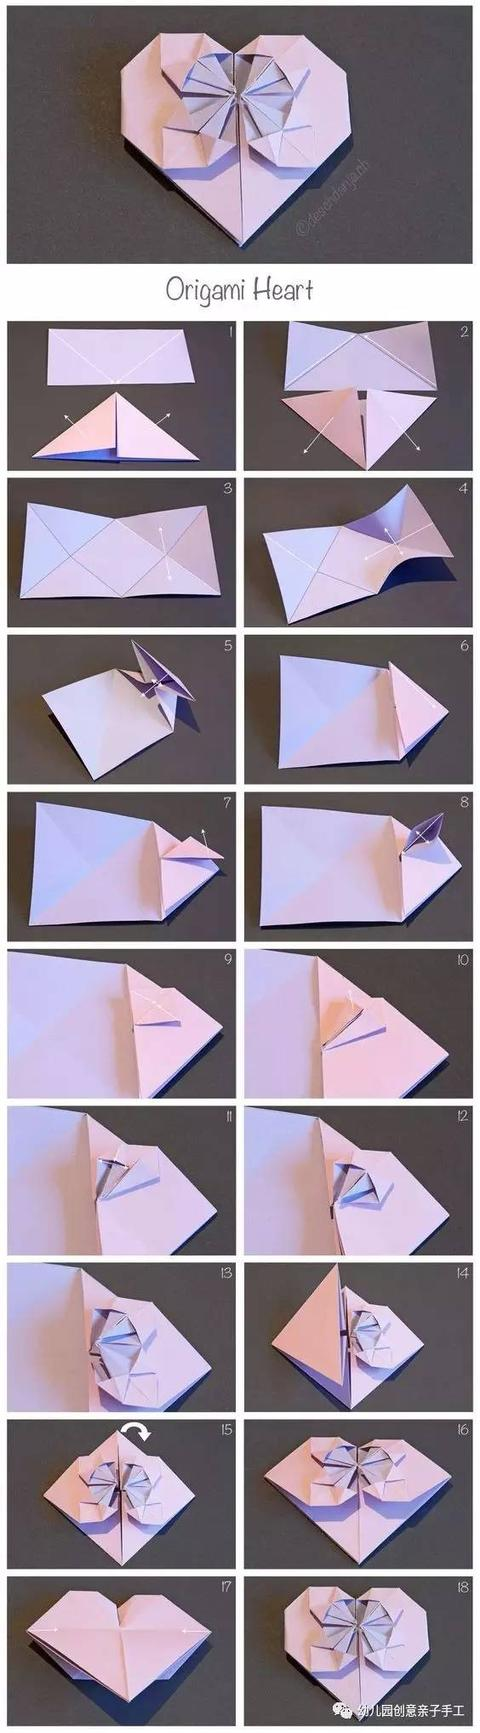 幼儿园创意亲子手工:爱心手工折纸大全,超经典!